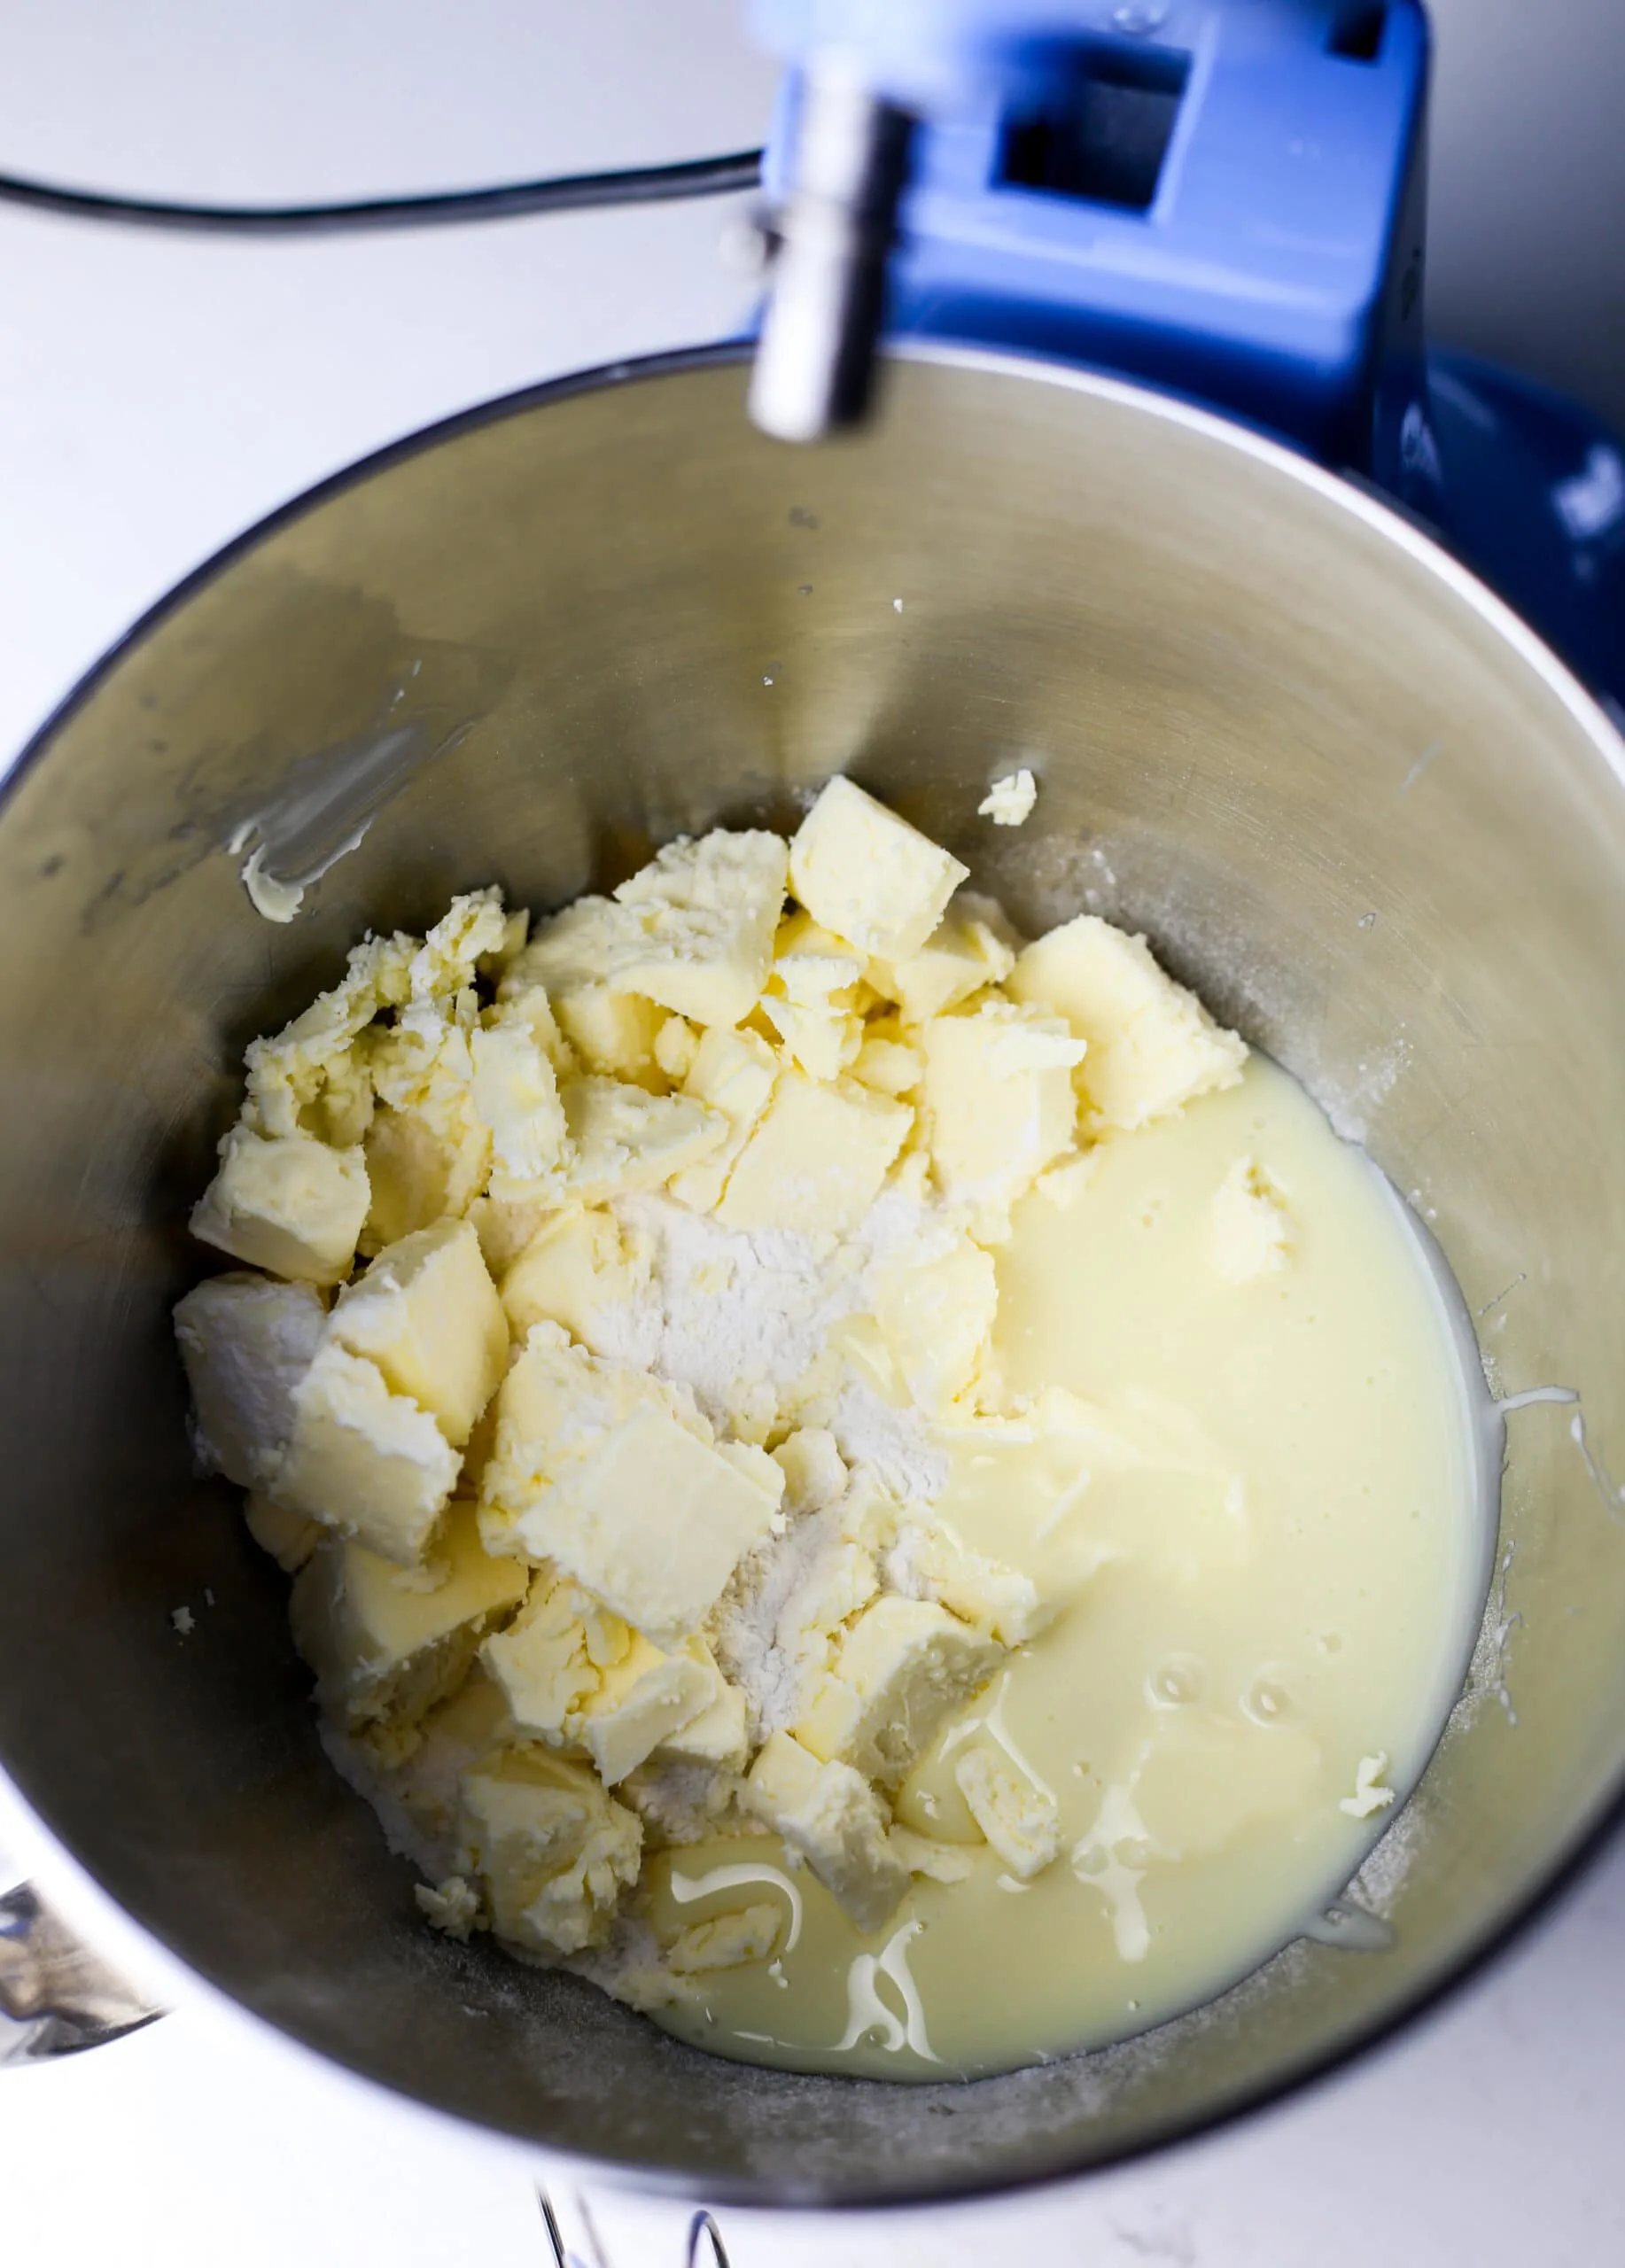 Condensed milk cookie ingredients in a mixing bowl.